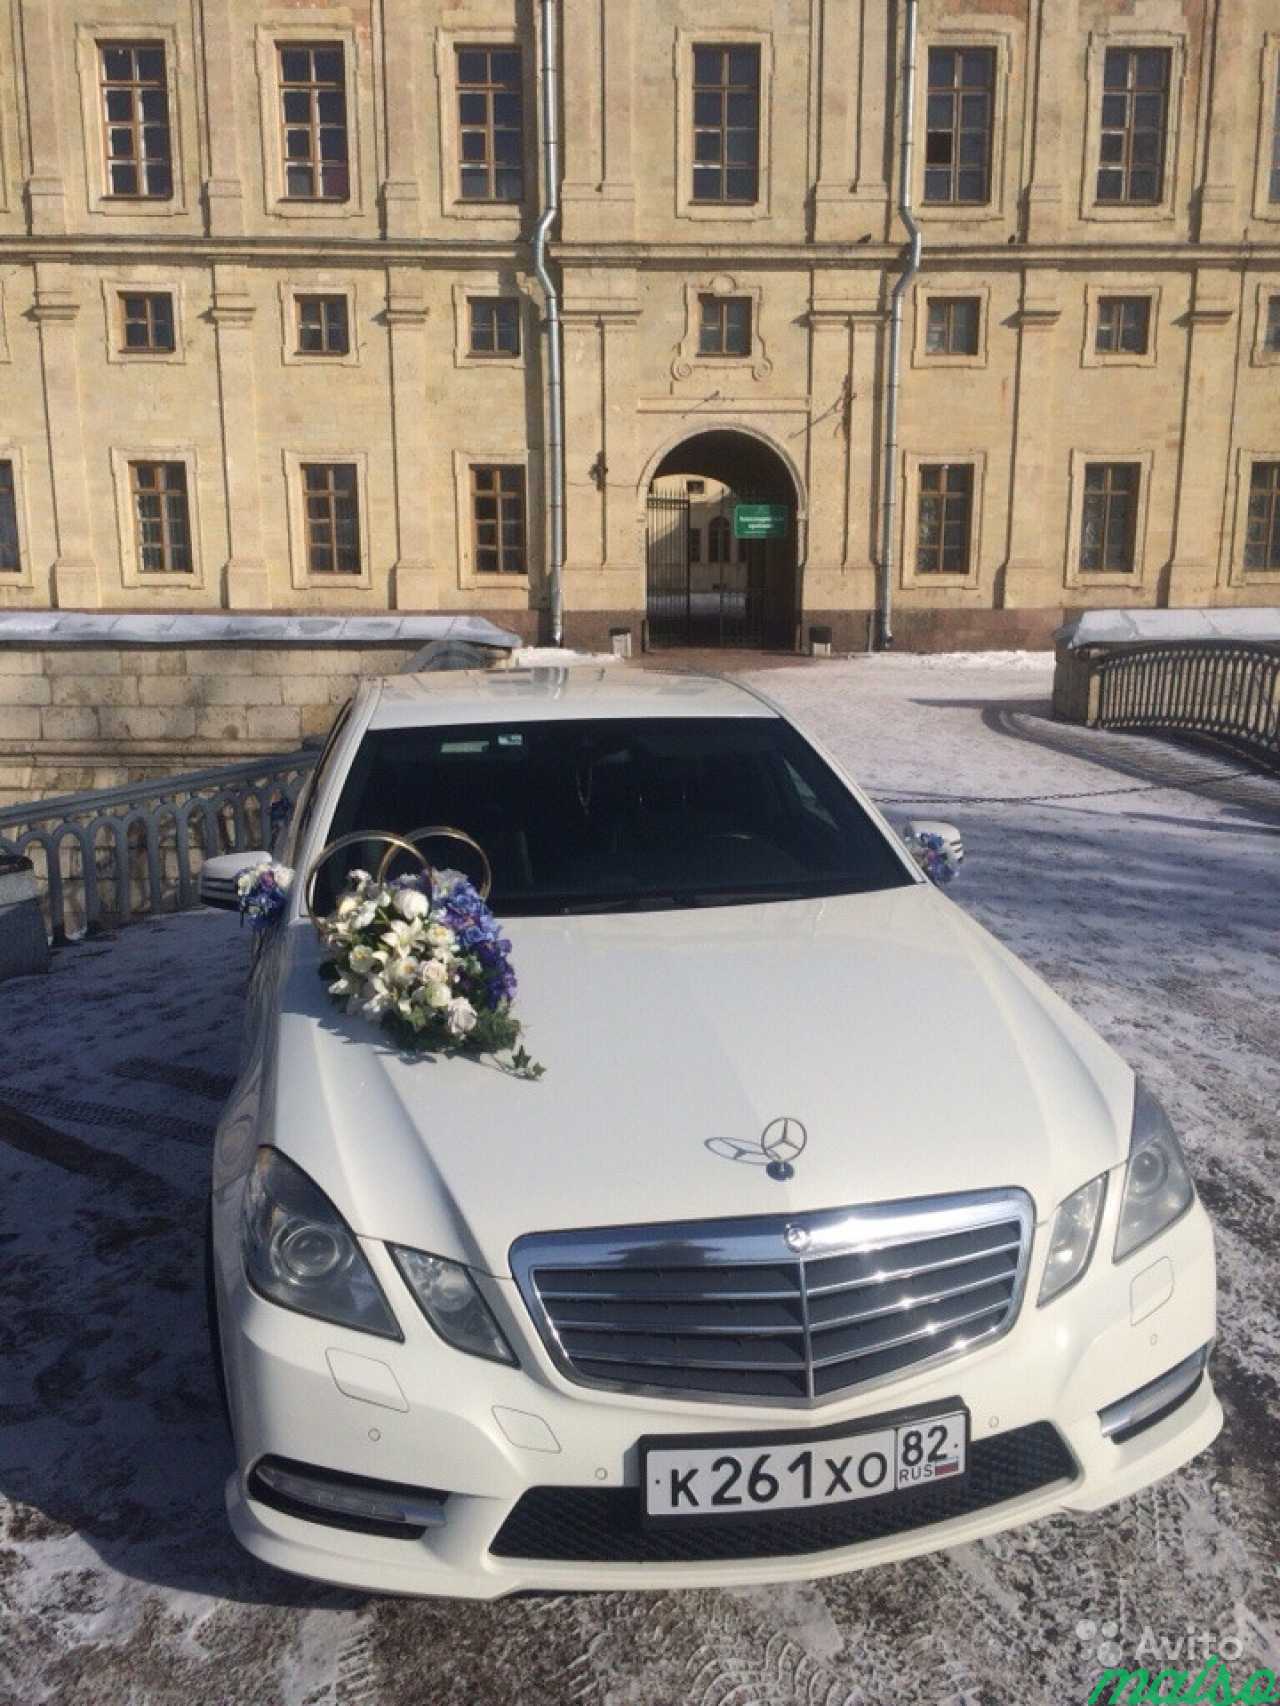 Автомобиль Mercedes E-class на свадьбу в Санкт-Петербурге. Фото 2